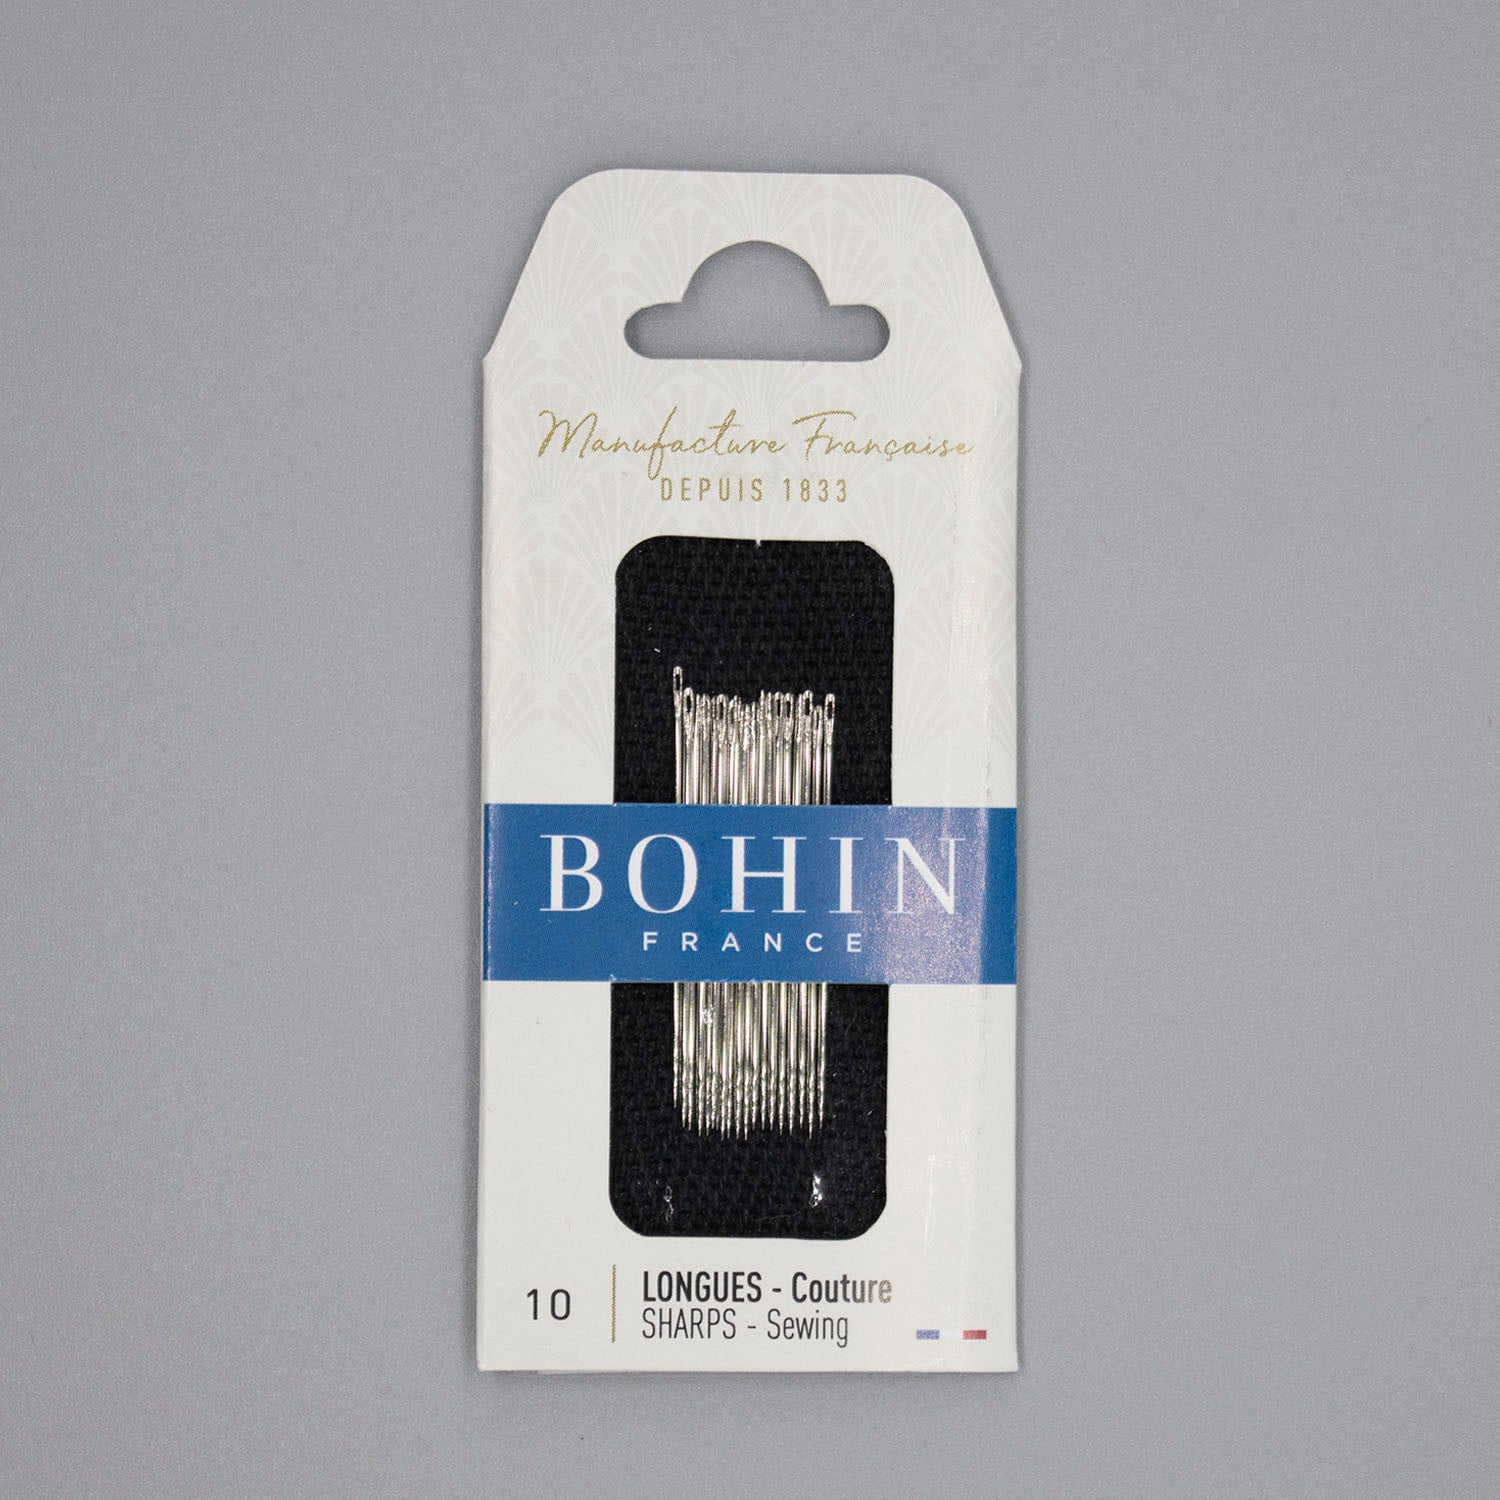 Bohin Needles, Bohin Notions